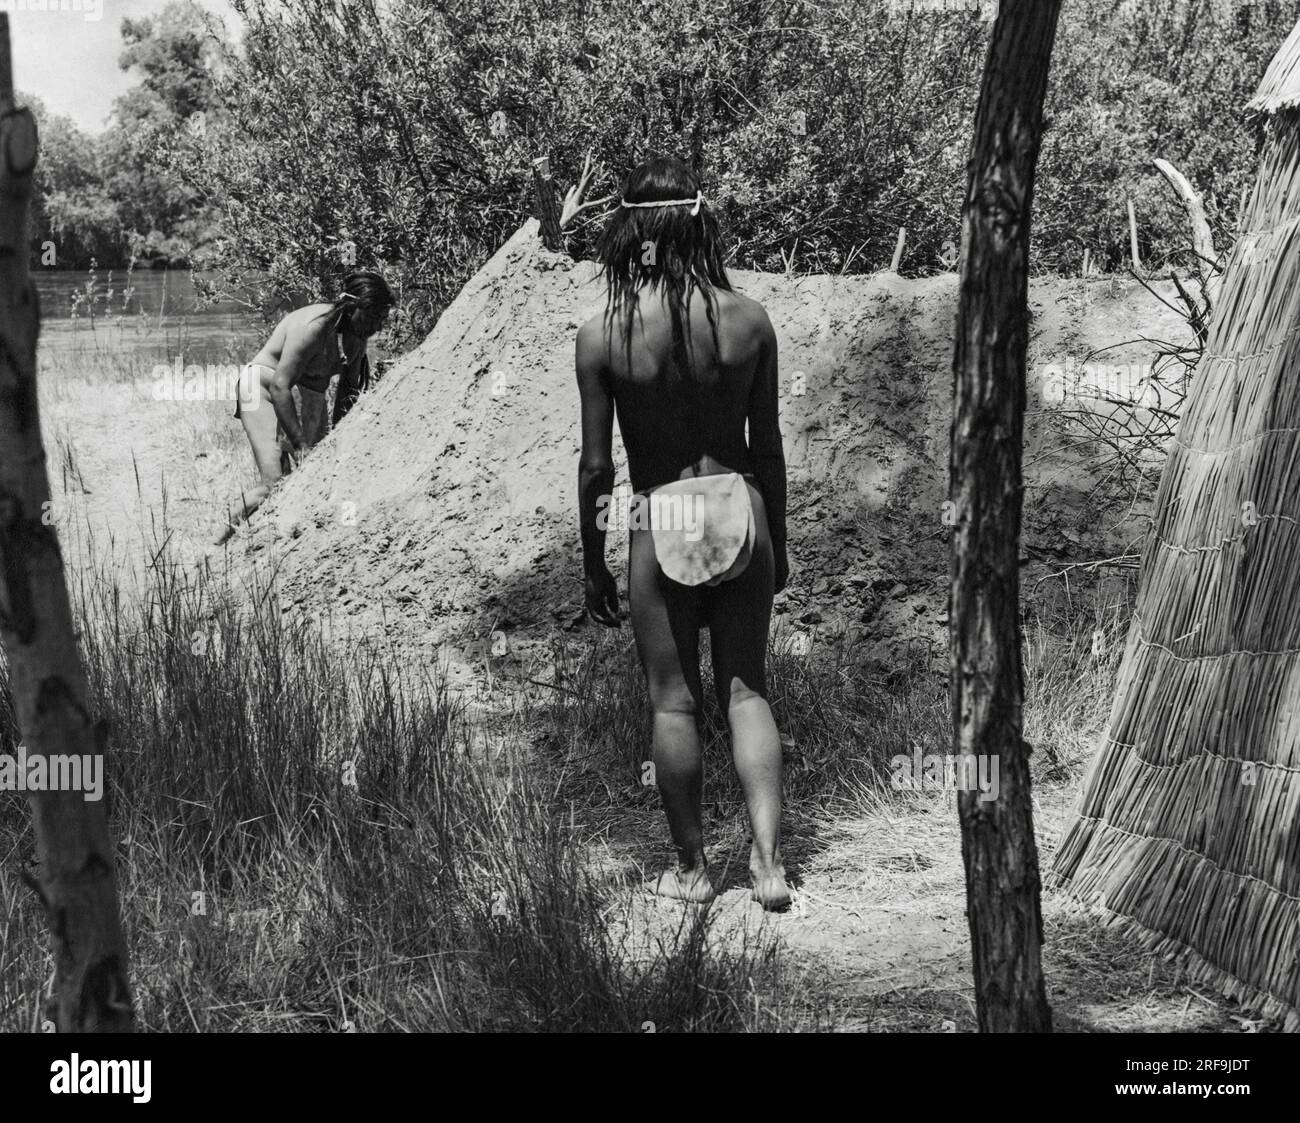 Kalifornien: ca. 1930 die meisten kalifornischen indianischen Dörfer hatten ein oder mehrere Schwitzhäuser, in denen sich die Männer täglich versammelten, um den traditionellen Brauch des Schwitzens zu genießen. Das erdbedeckte Haus wurde in der Nähe des Flusses gebaut, damit die Männer nach dem Schwitzen ins Wasser springen konnten. Stockfoto